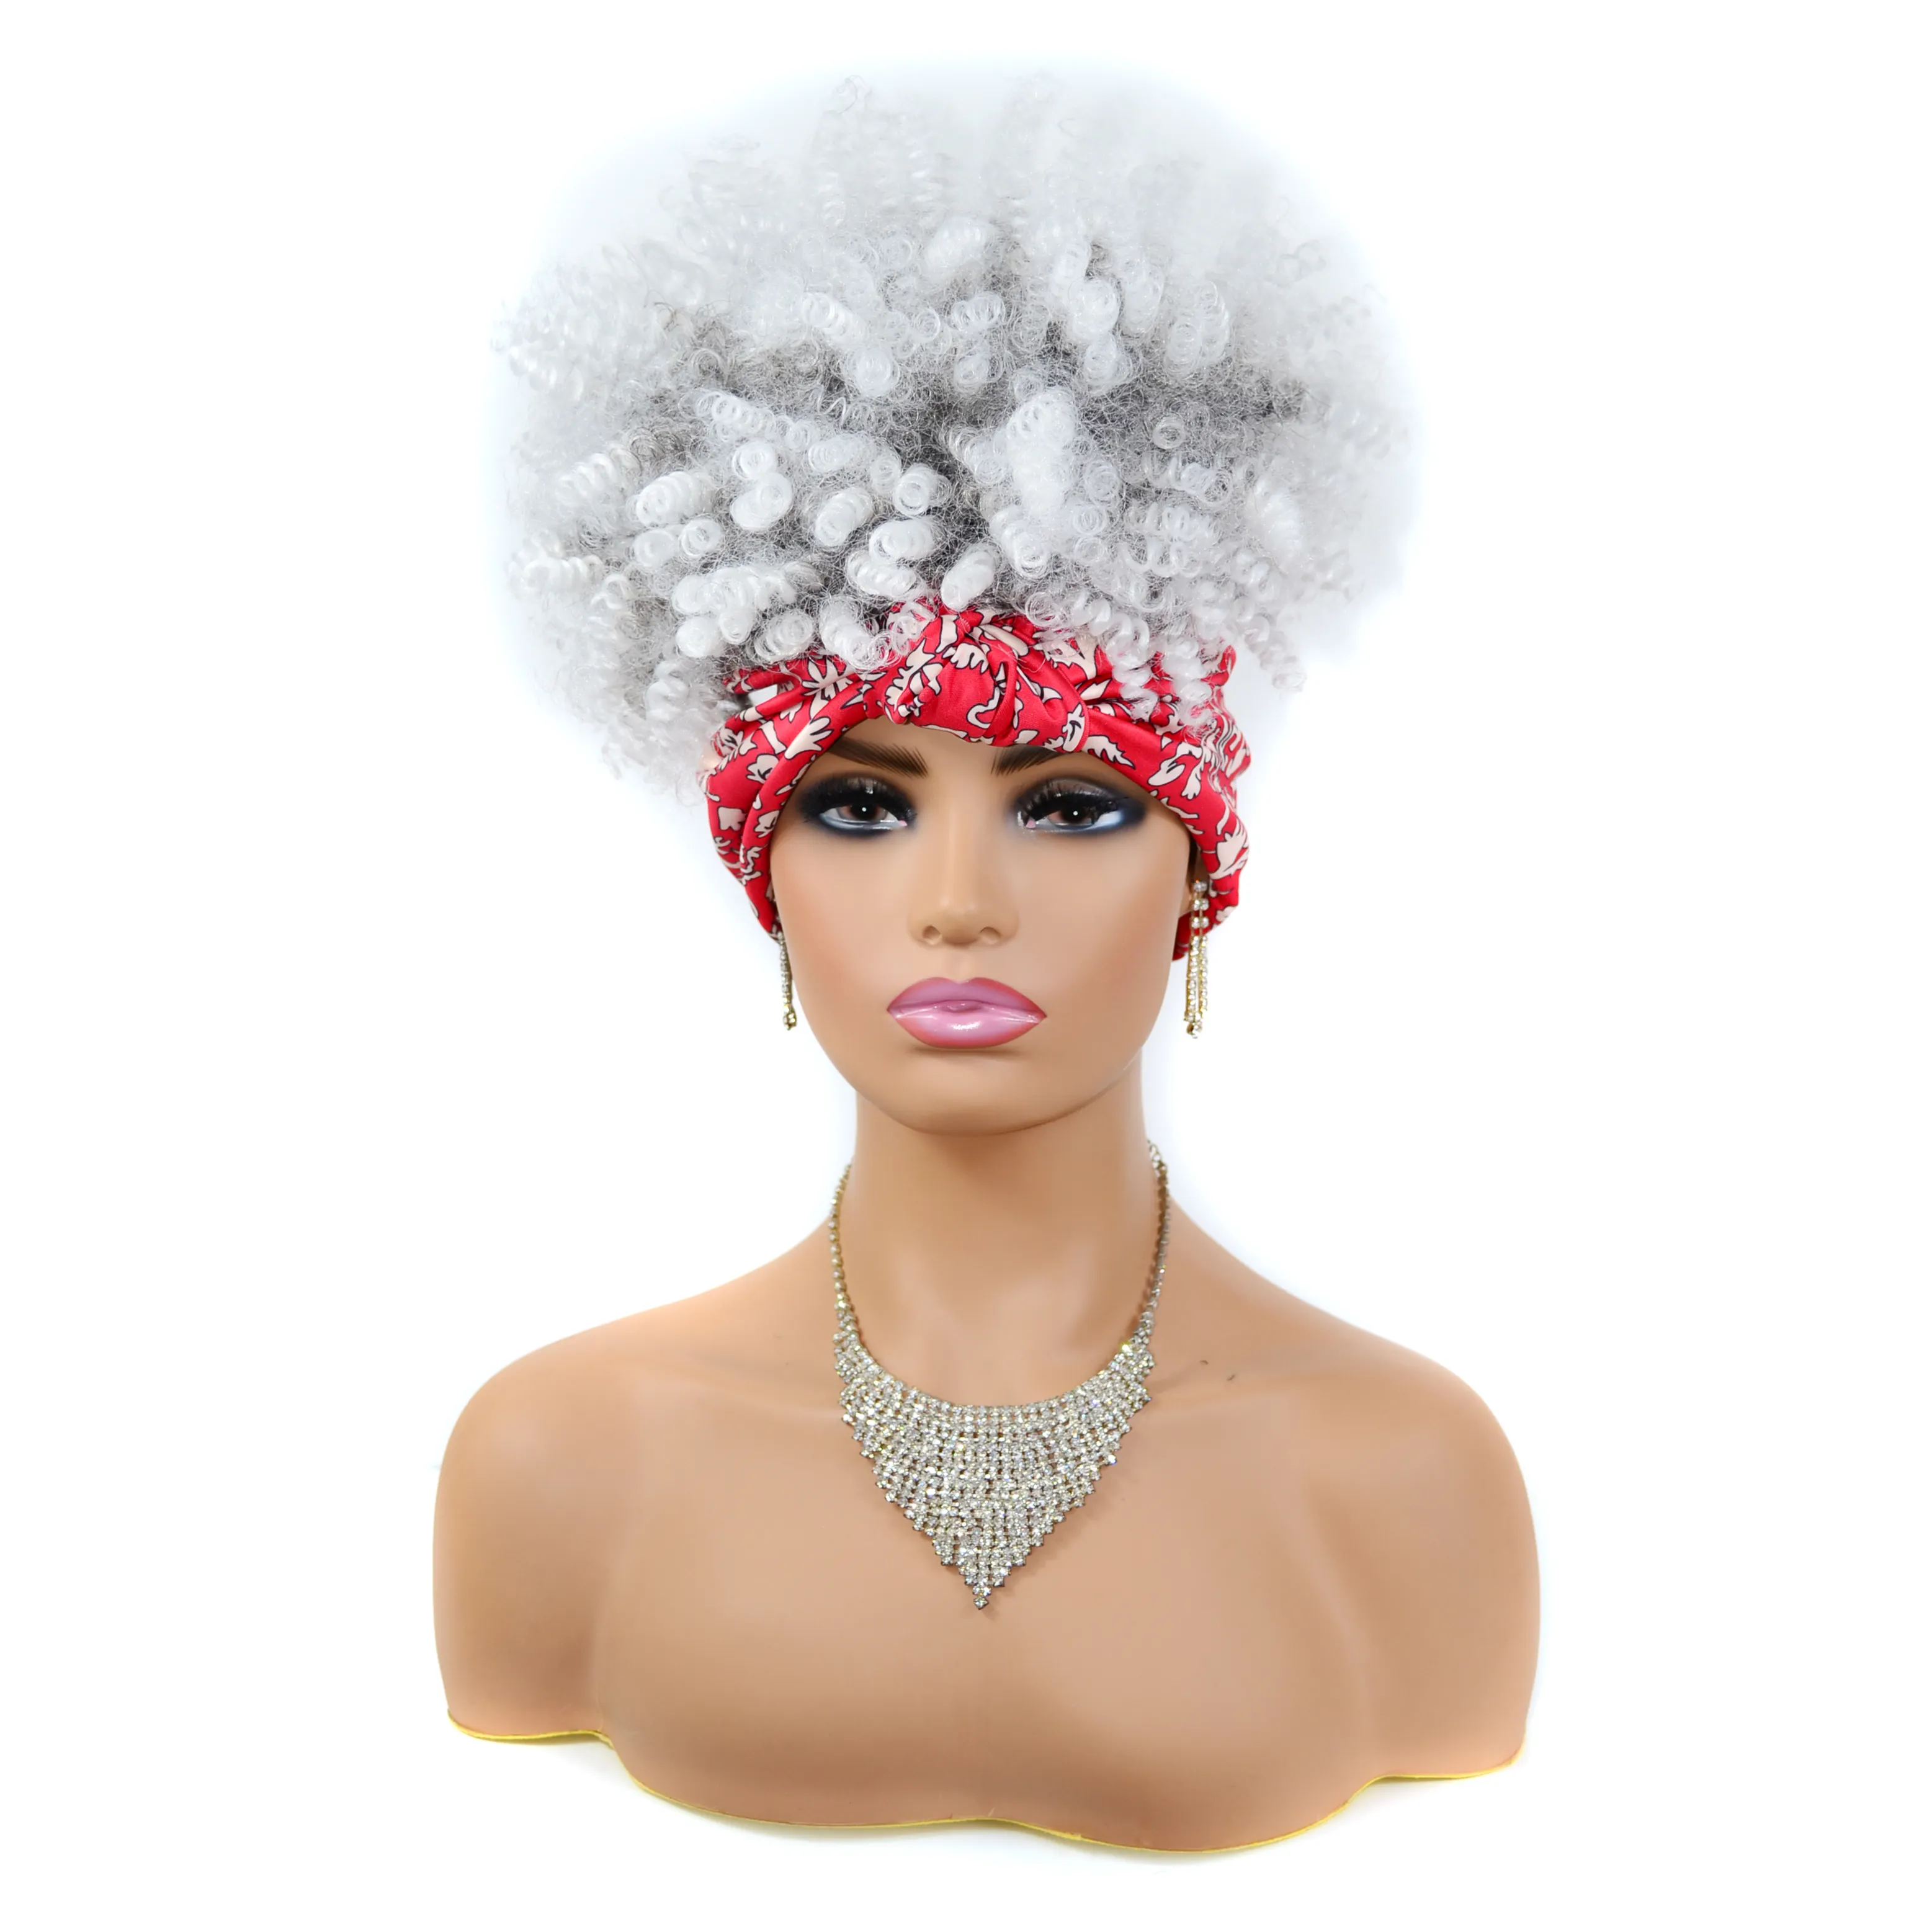 Myzyr peruca com faixa de cabeça afro, atacado, encaracolada, para mulheres negras, cabelo sintético, para uso diário ou partido